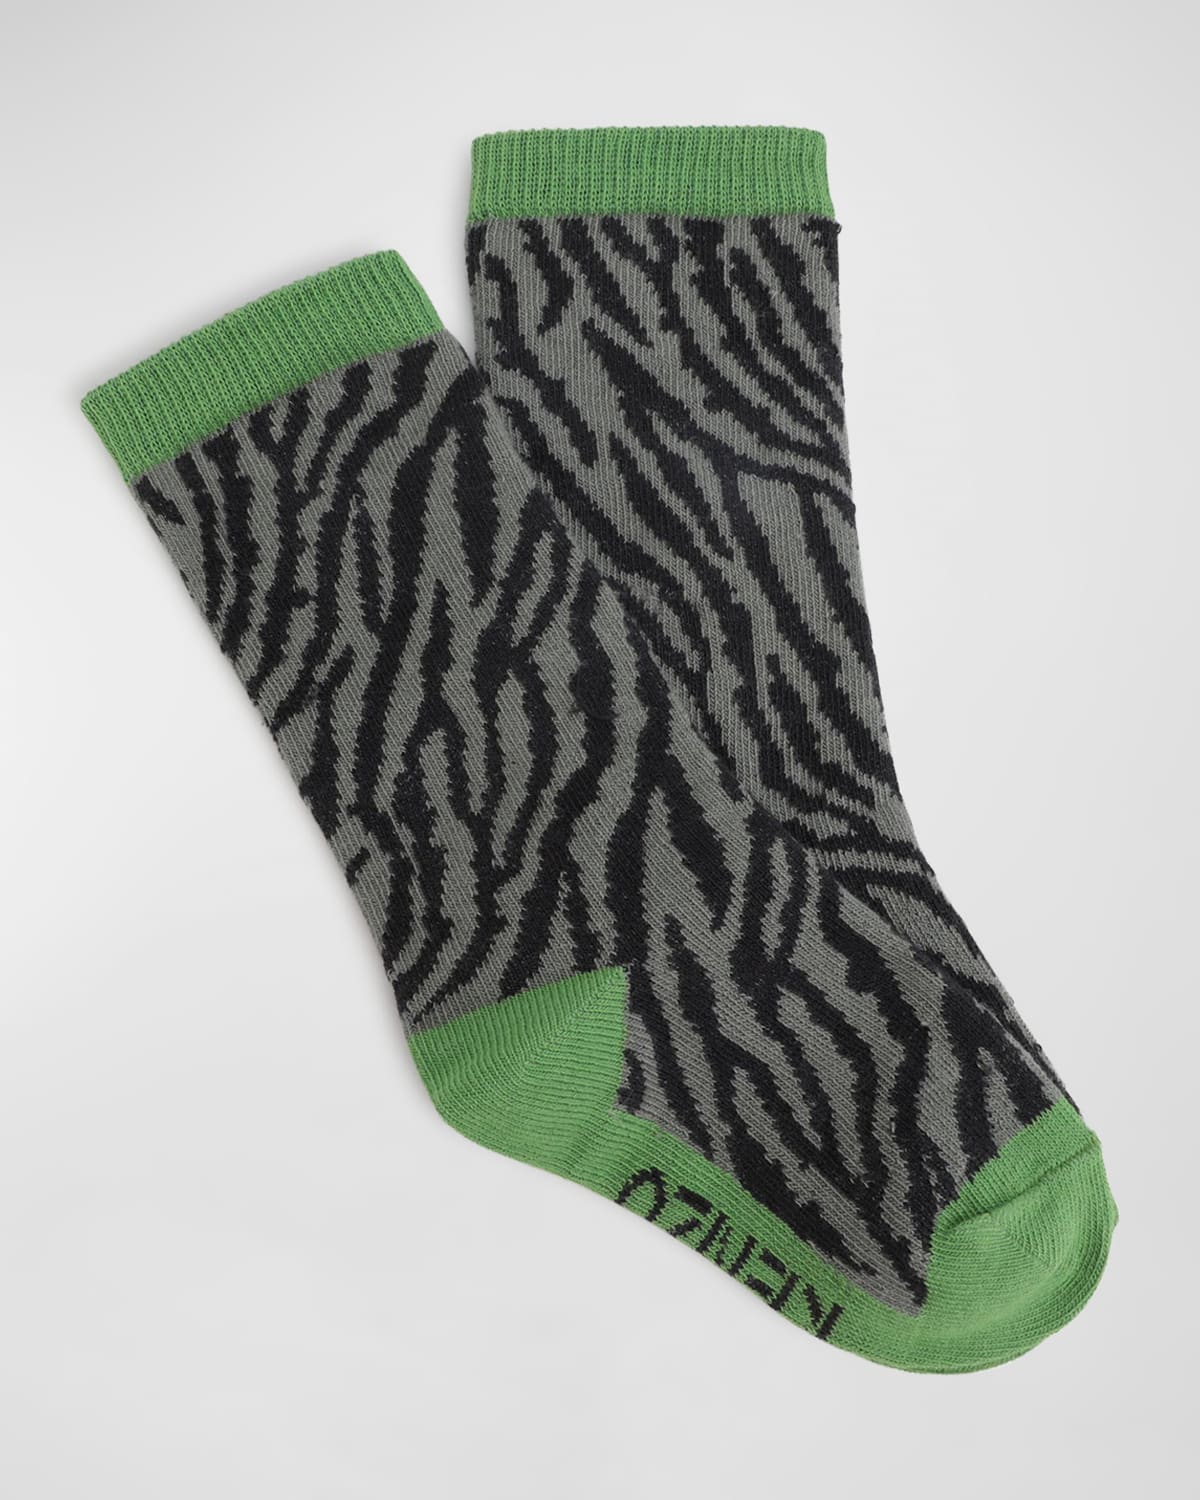 Kenzo Kids' Boy's Tiger Printed Socks In 621-olive